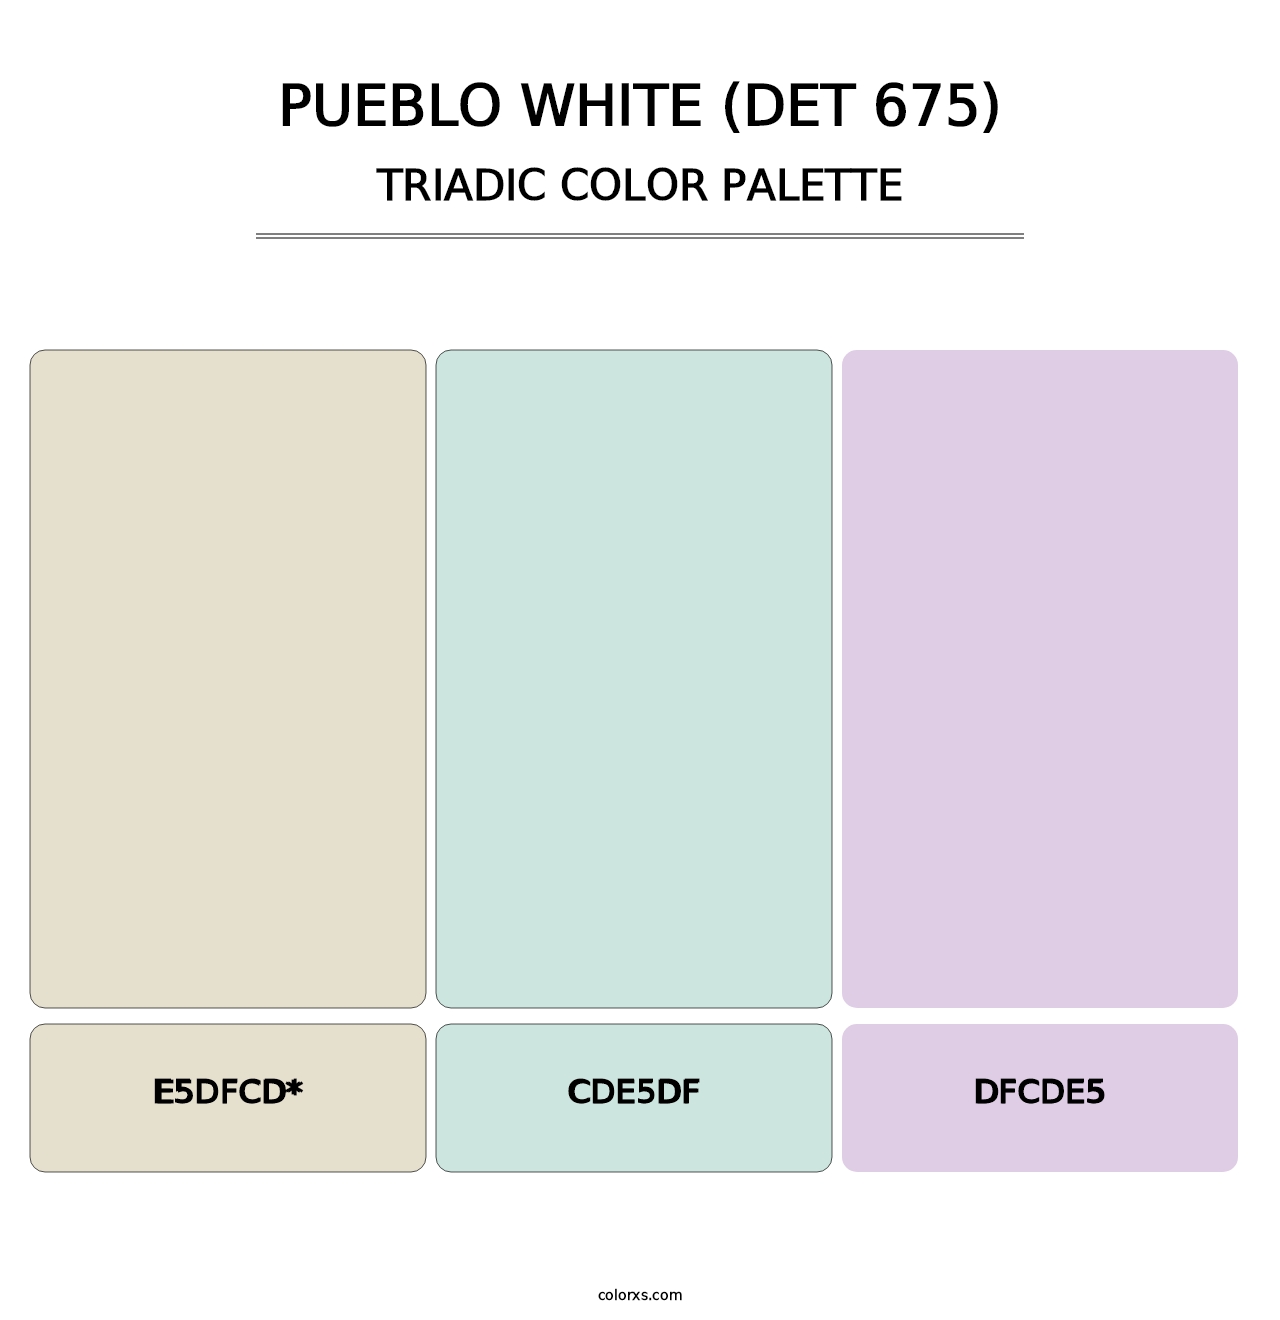 Pueblo White (DET 675) - Triadic Color Palette